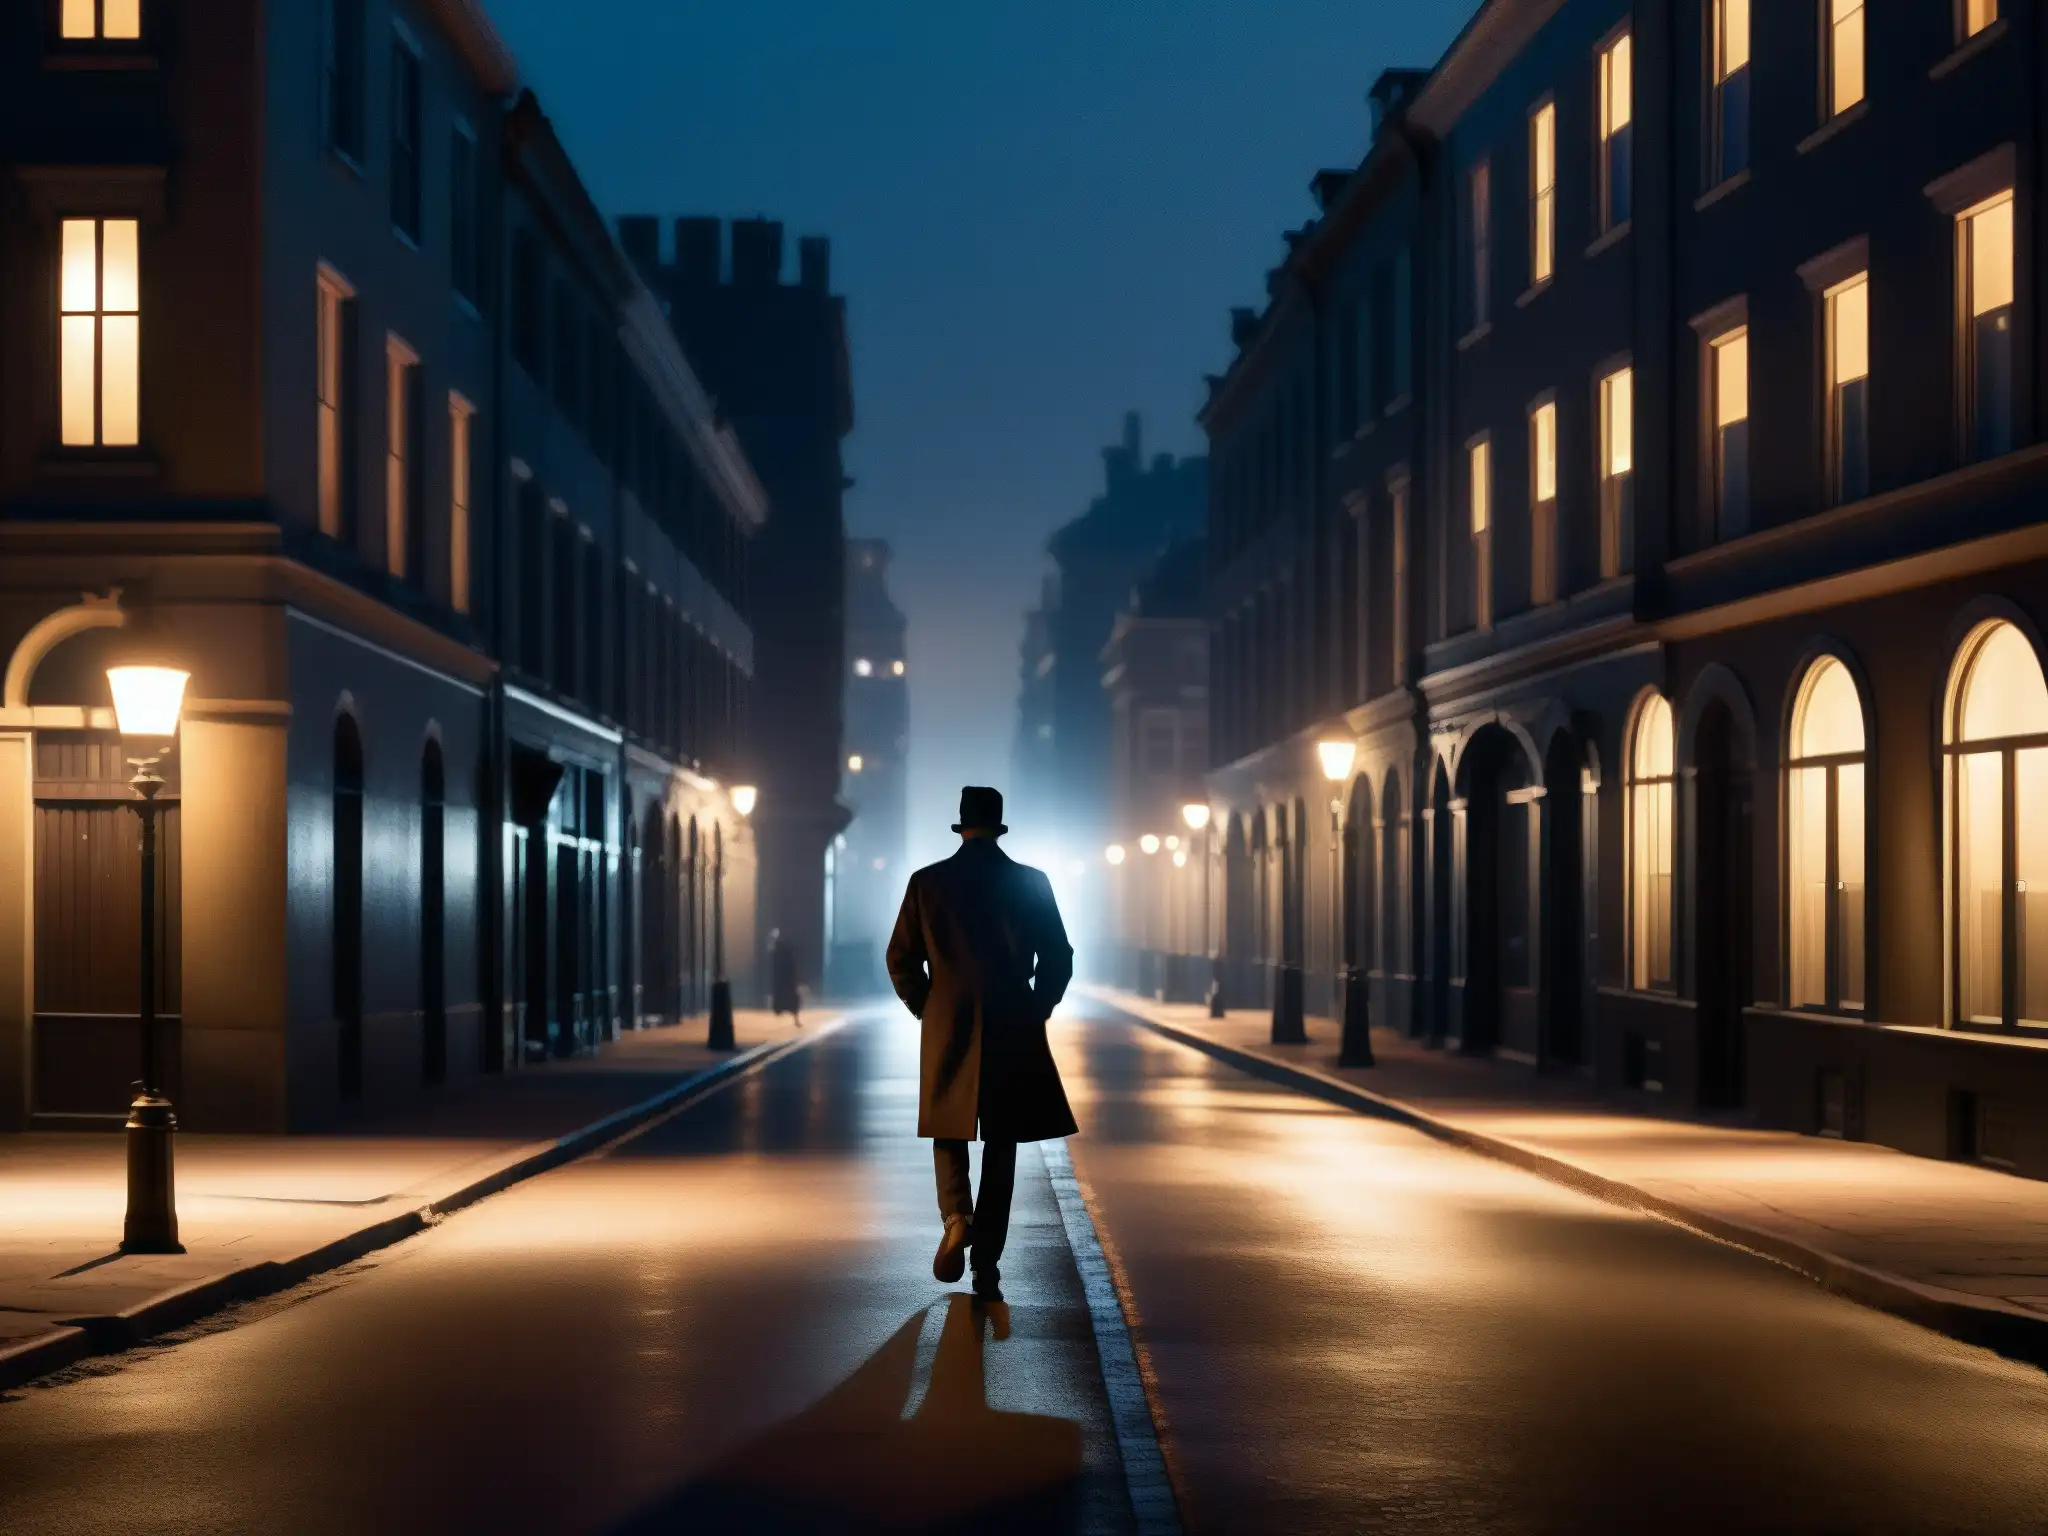 Una misteriosa noche urbana con una figura solitaria, evocando análisis psicológico de mitos urbanos